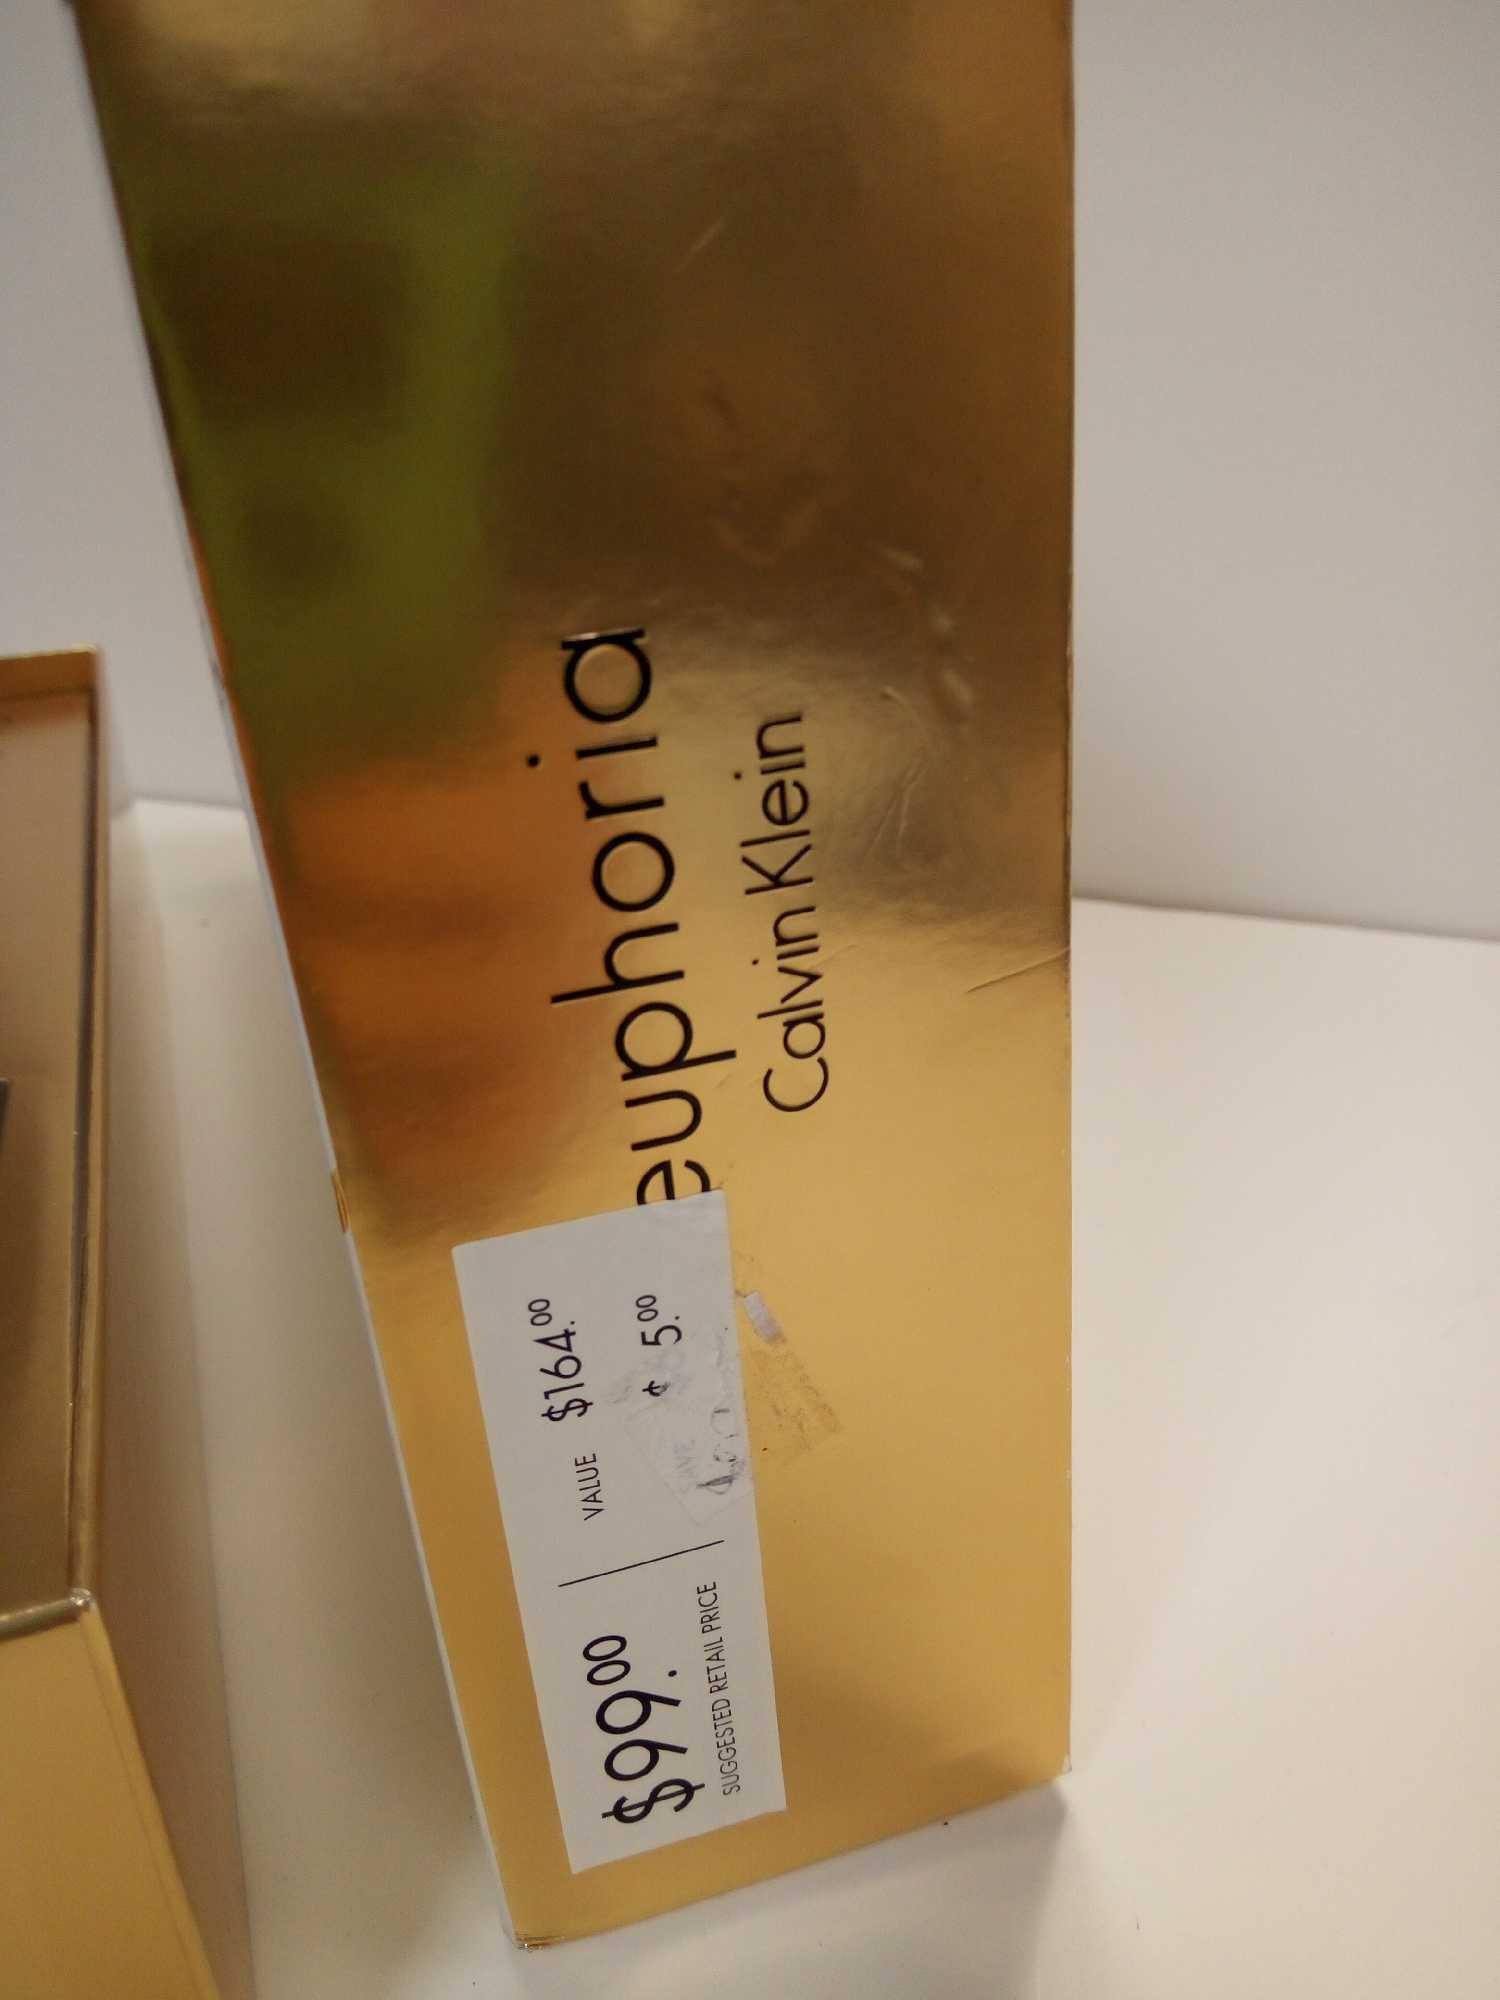 Calvin Klein Euphoria 3.4 oz Eau de Parfum Spray 3 Pc. Gift Set for Women